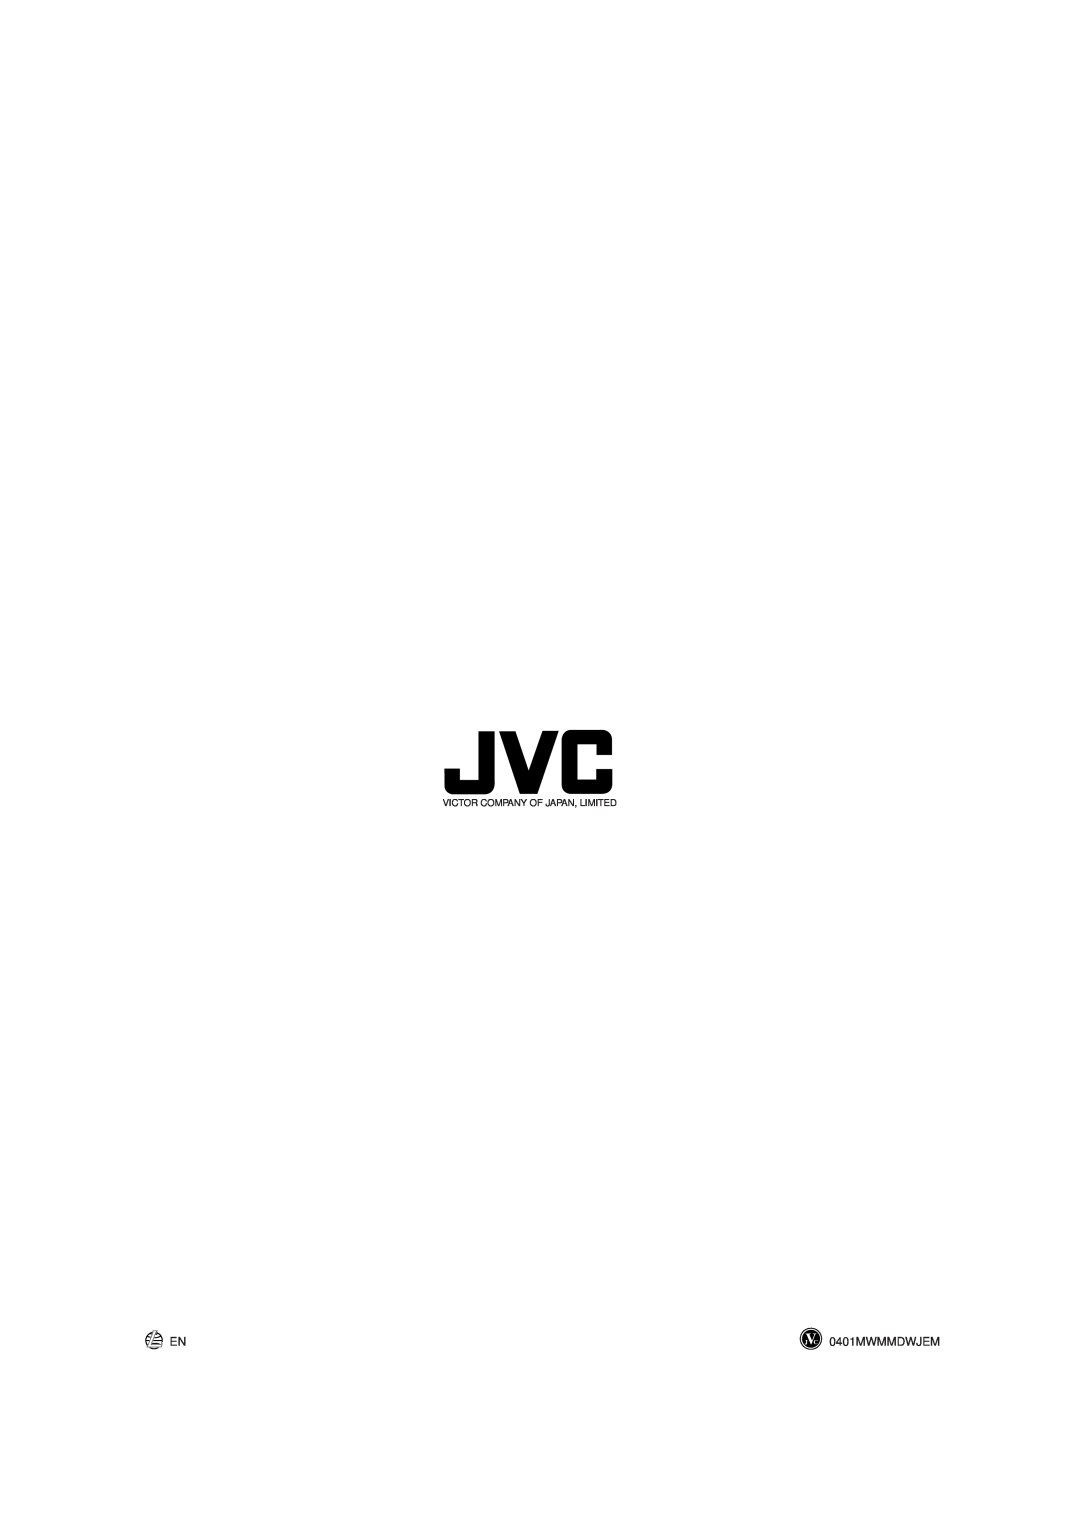 JVC CA-MXGT90 manual 0401MWMMDWJEM, Victor Company Of Japan, Limited 